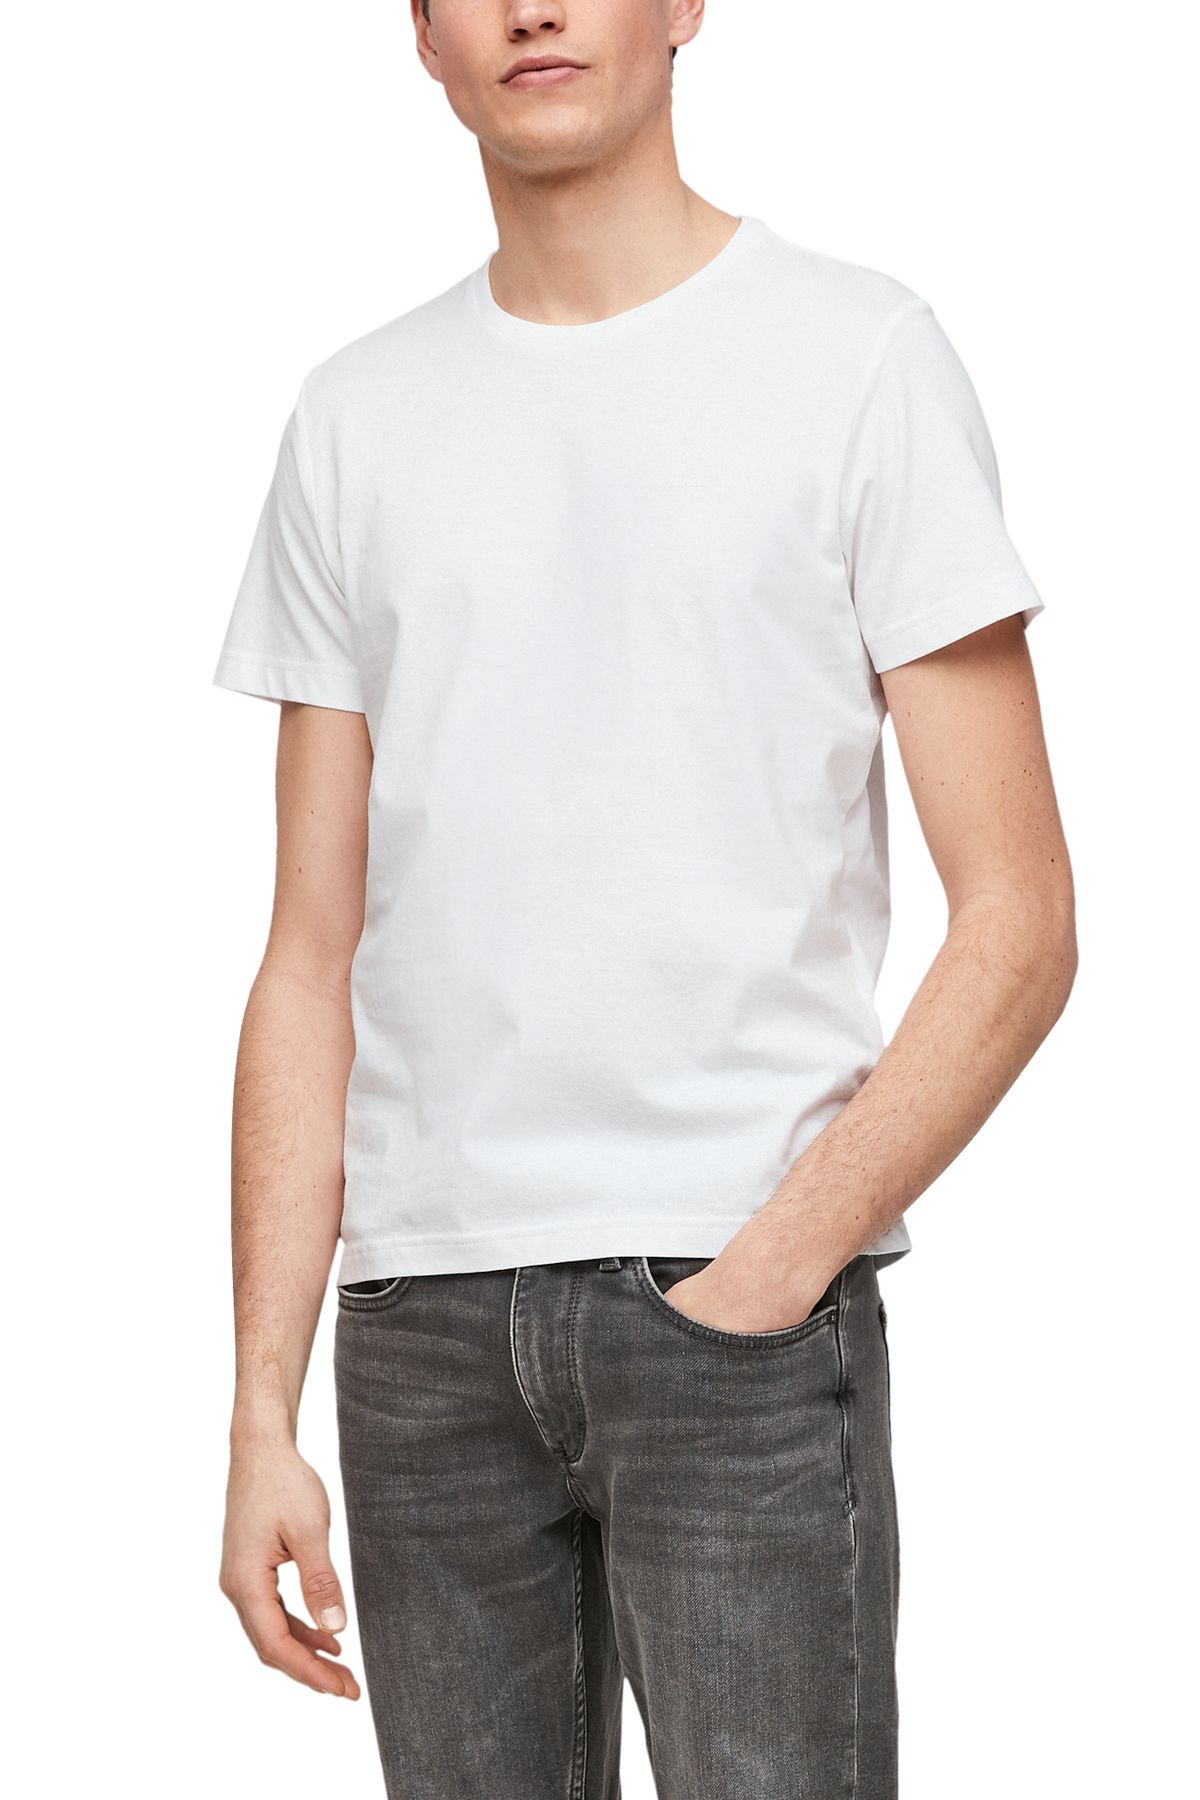 fit - T-Shirt - s.Oliver Trendyol Regular White -